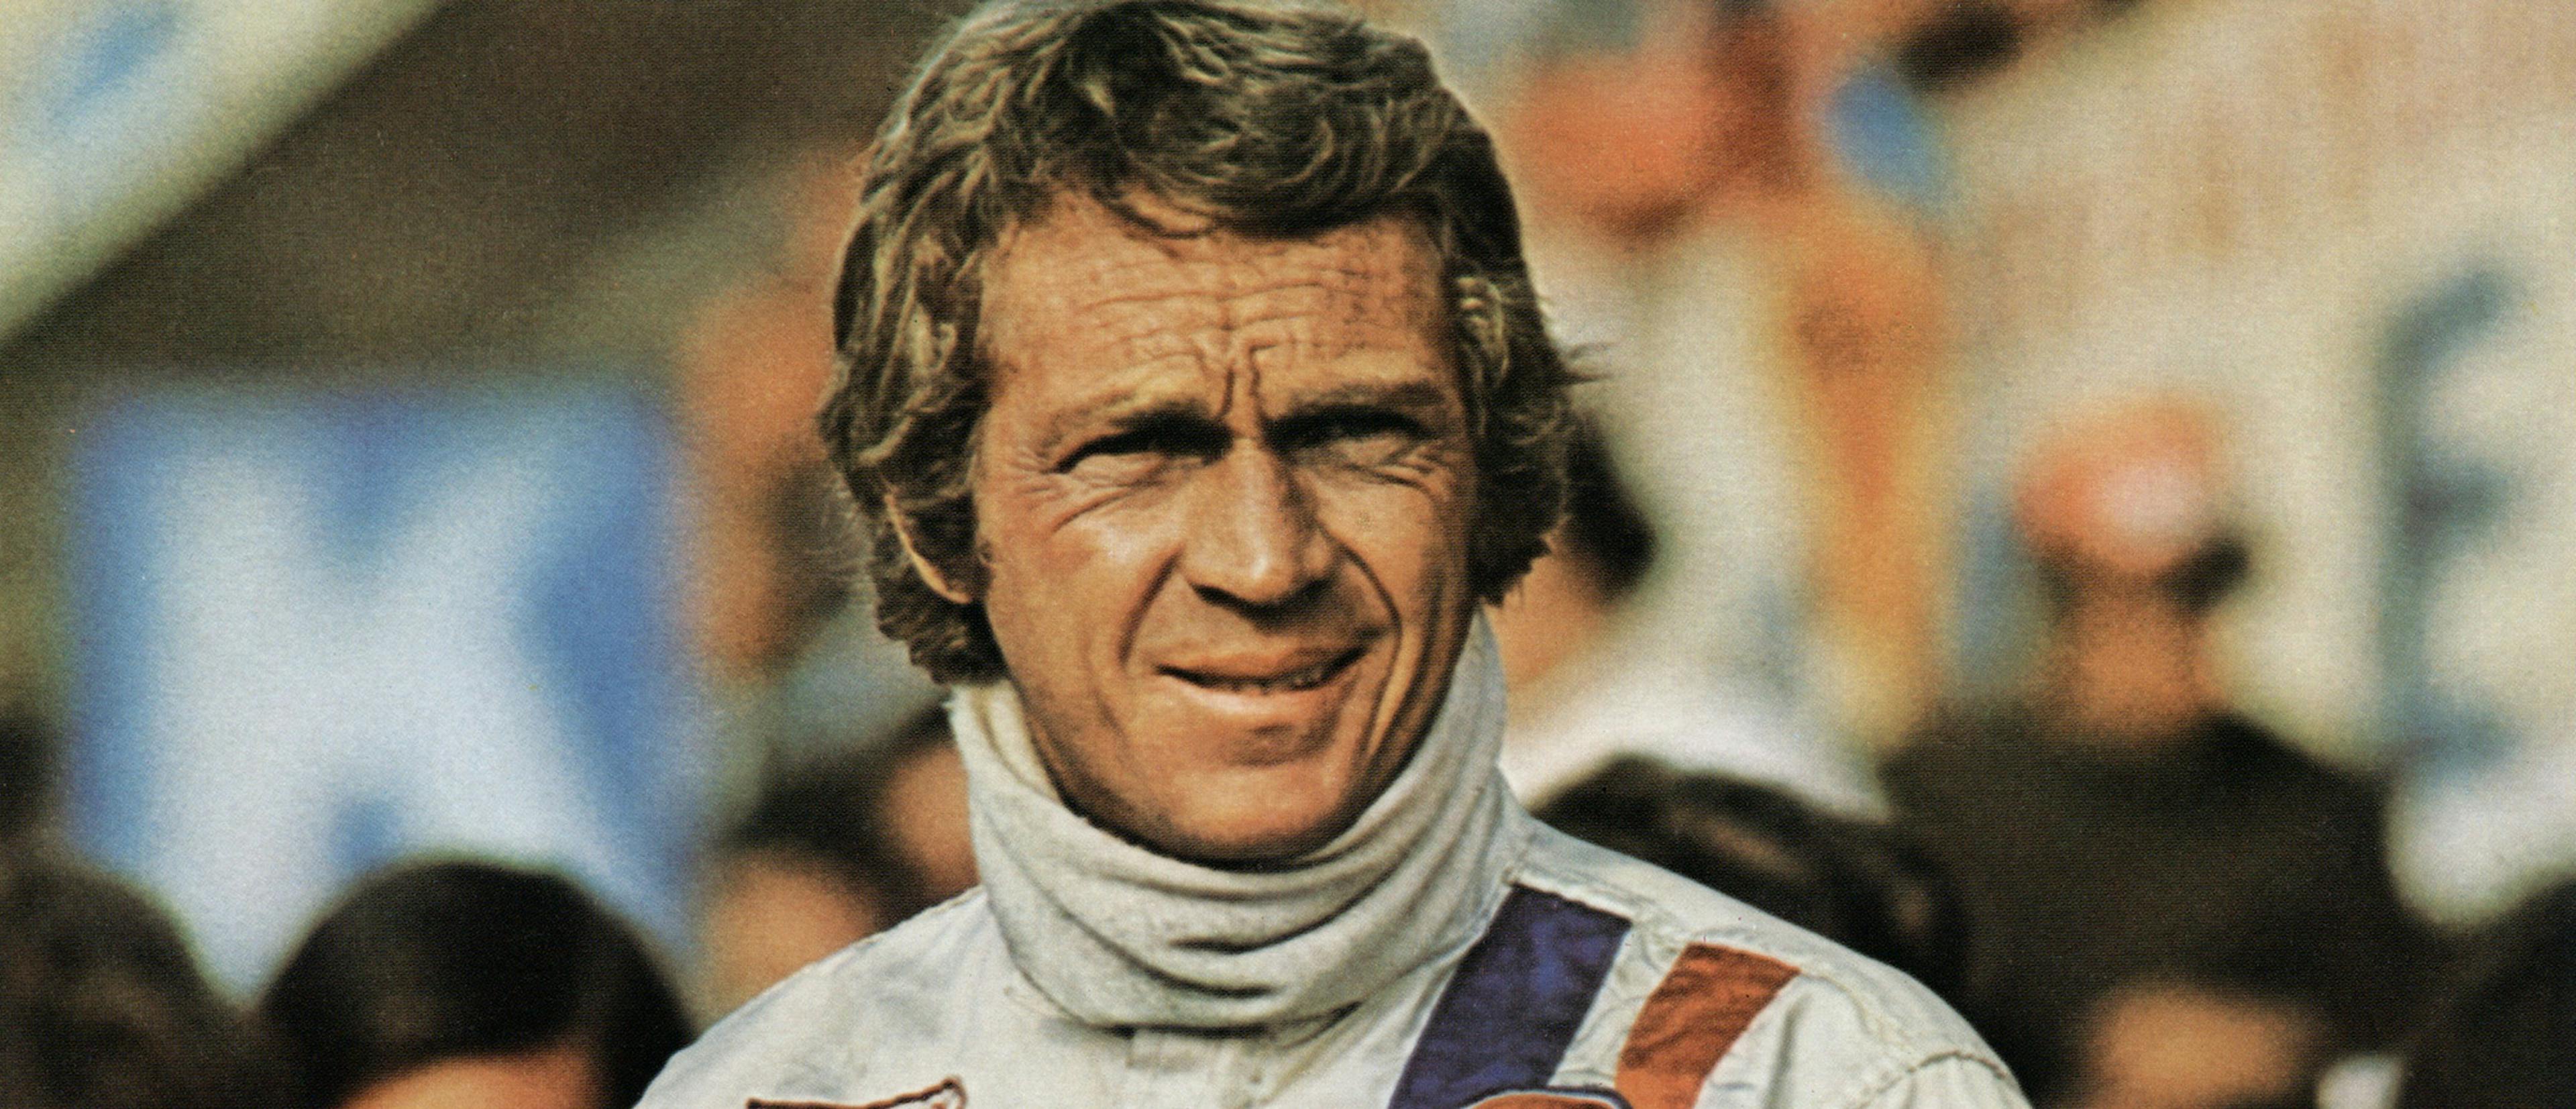 Imagen del actor Steve McQueen durante su participación en Le Mans en 1971